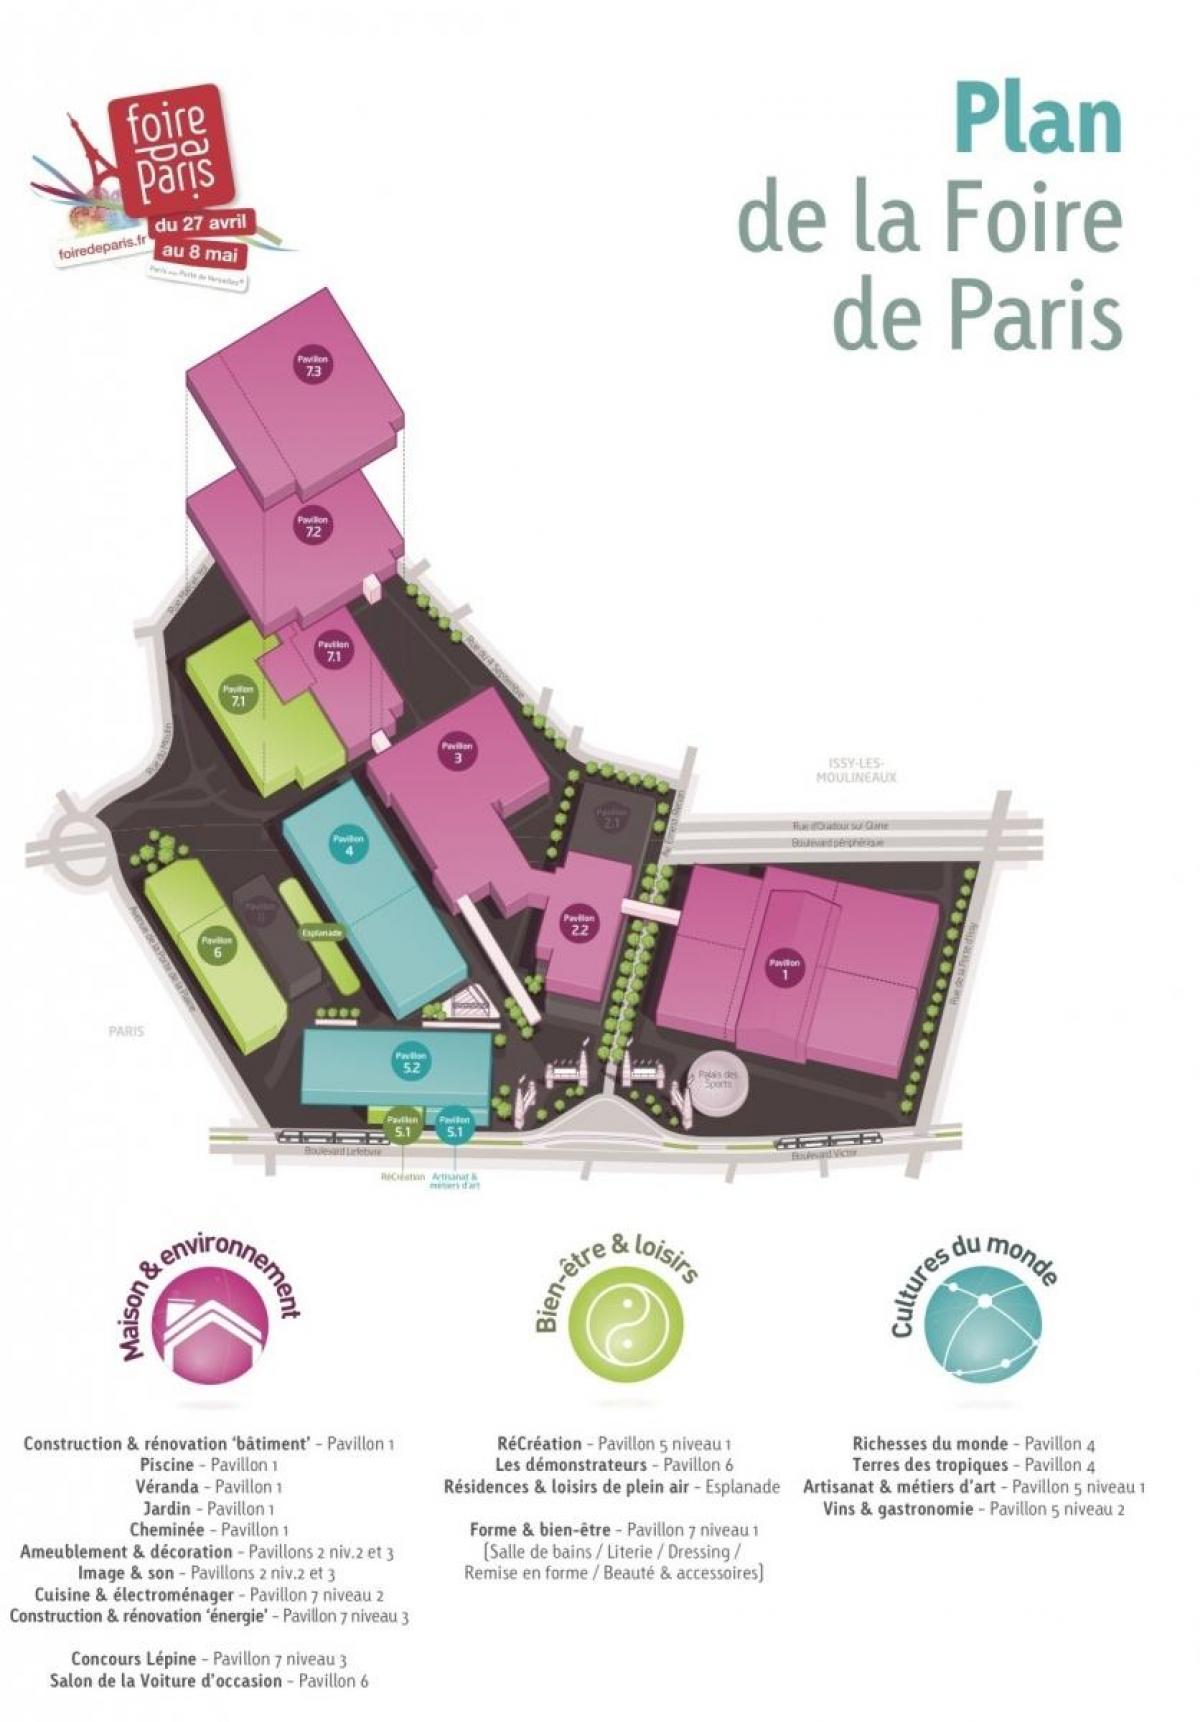 نقشه از Foire de Paris